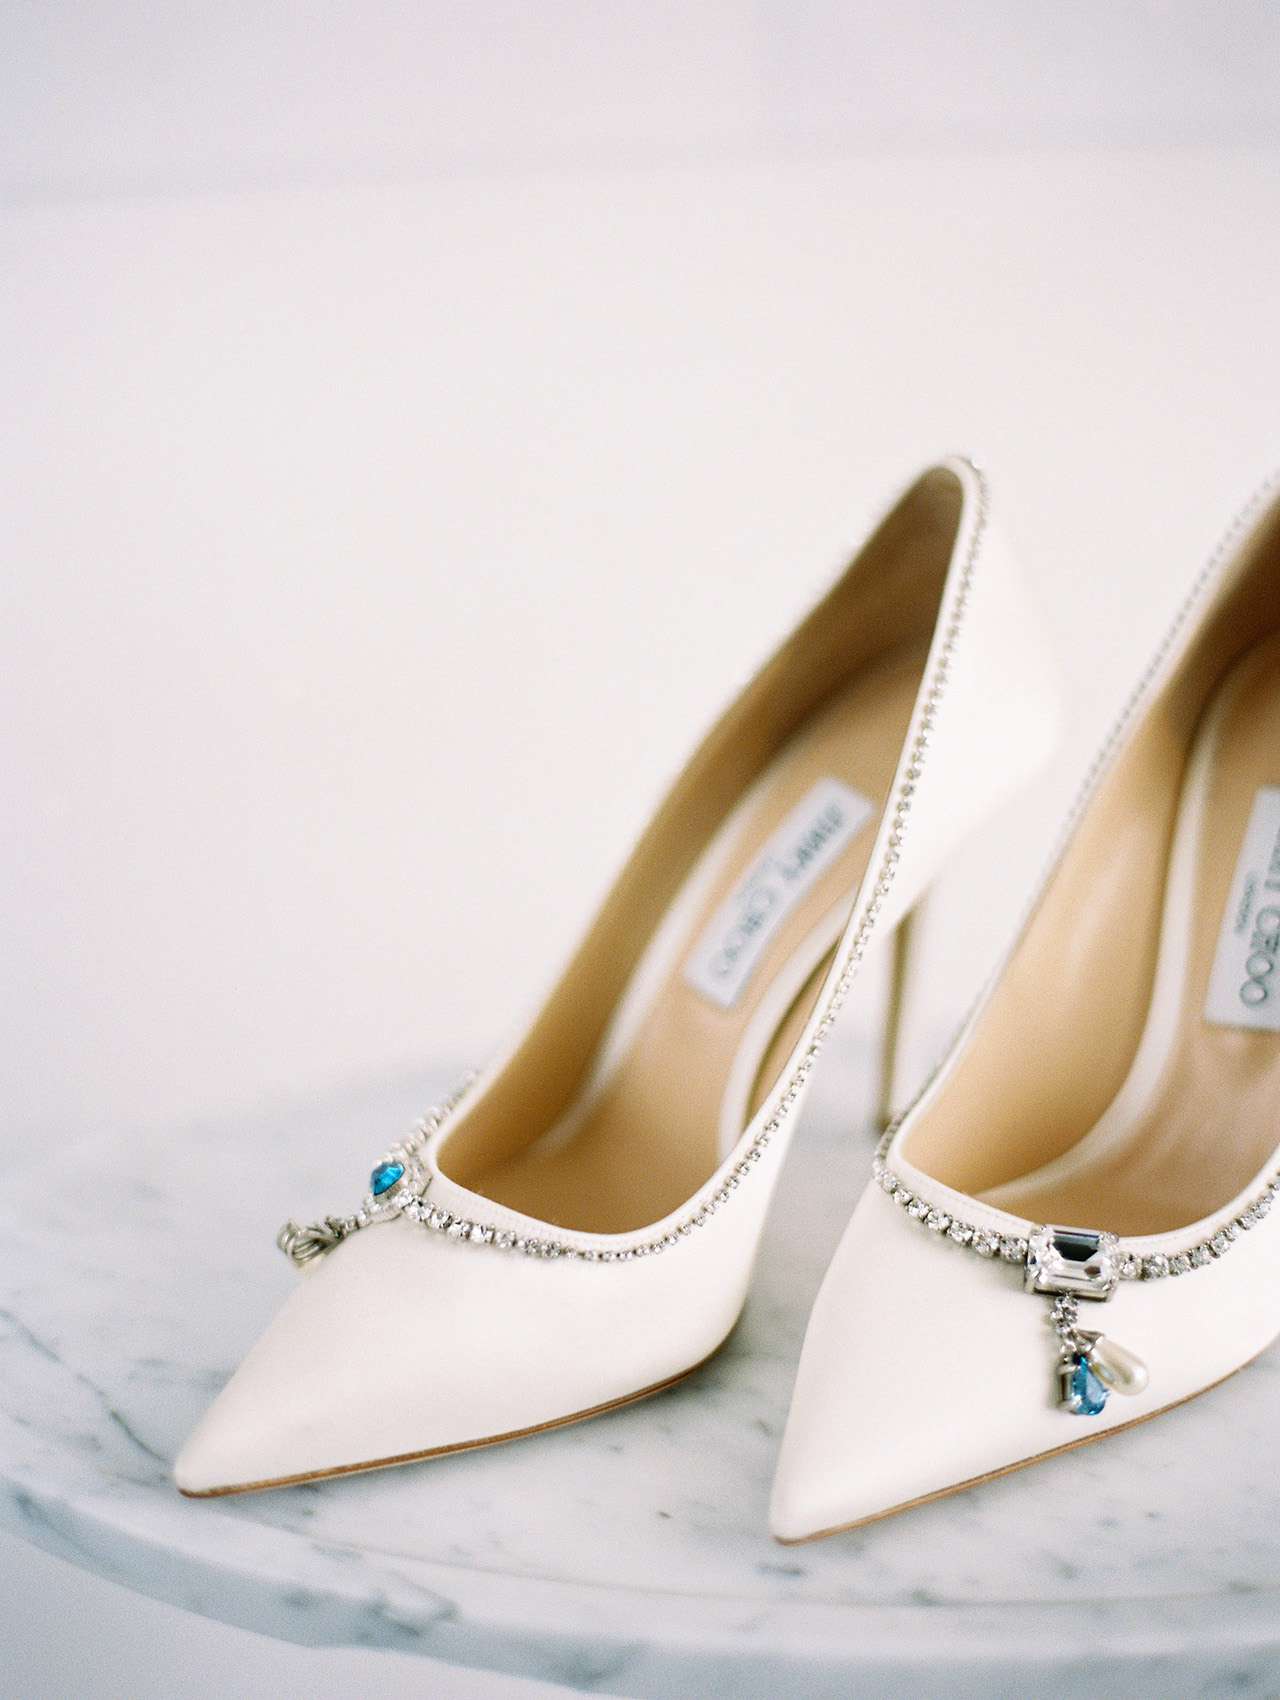 denita john wedding shoes bride